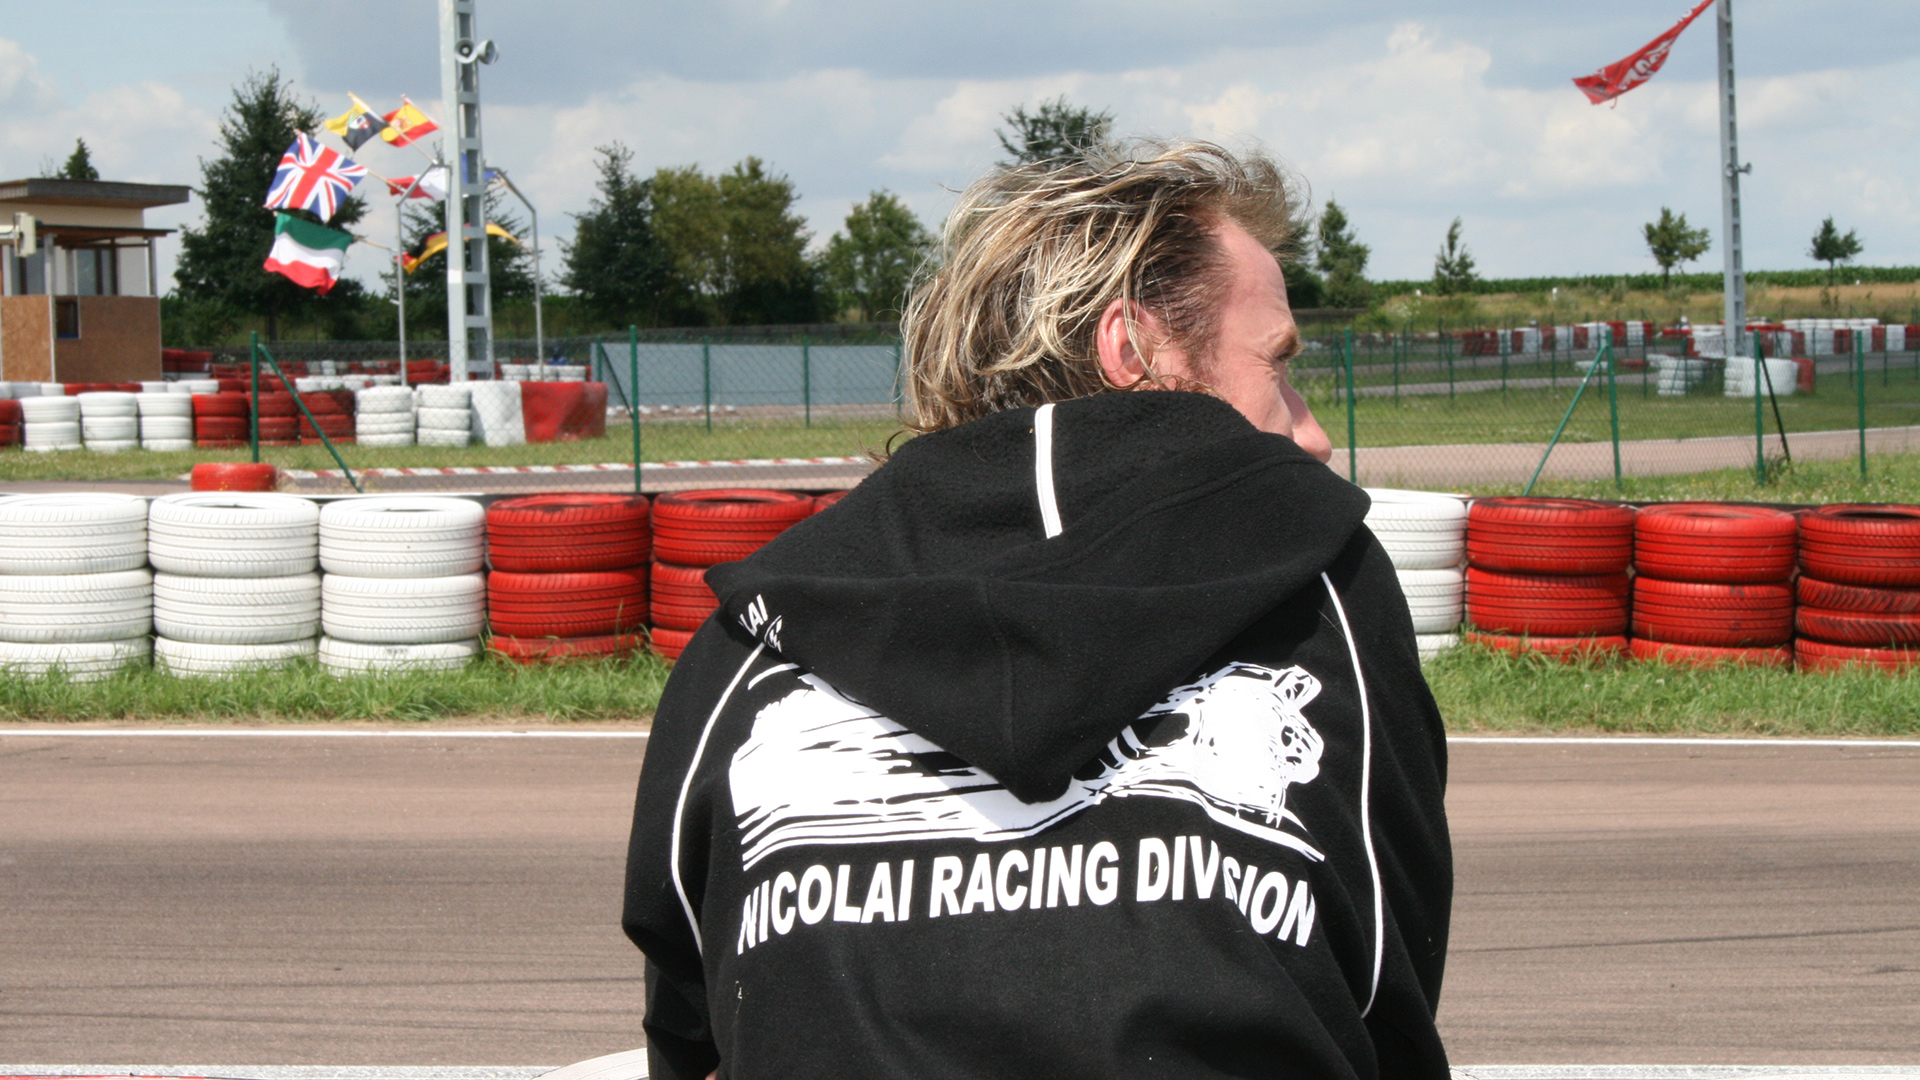 Nicolai Racing Division